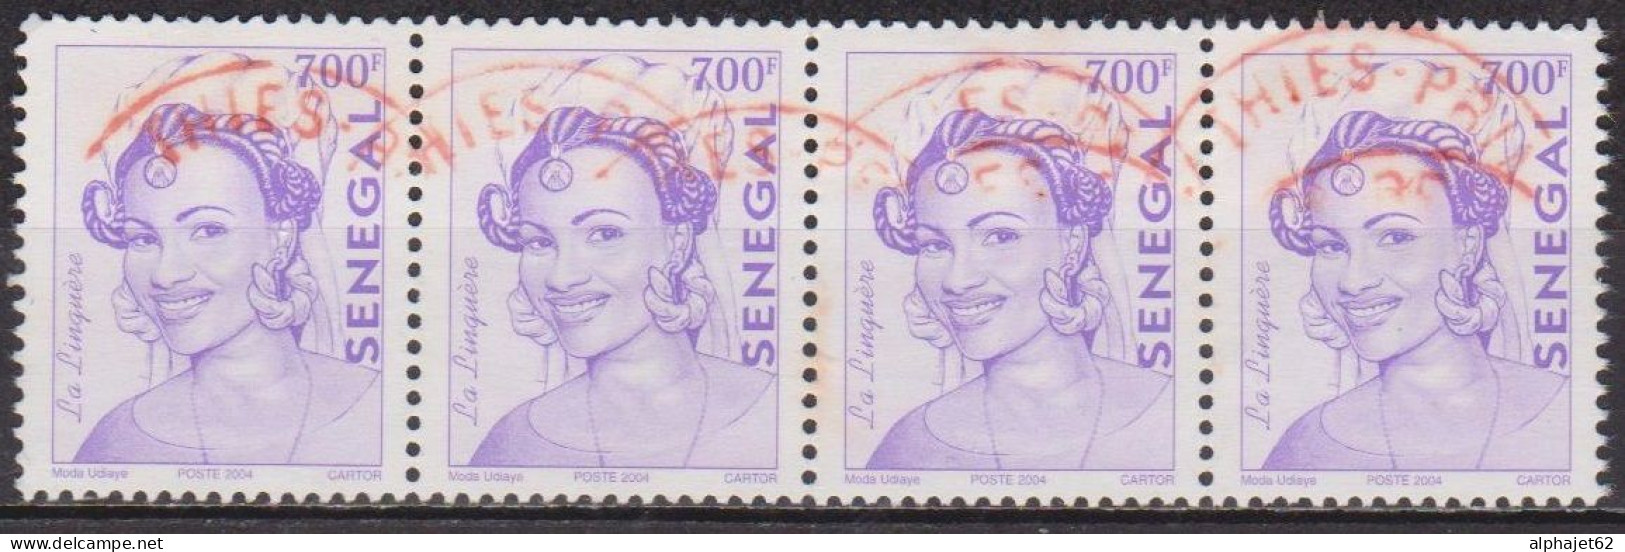 Coiffures - SENEGAL - La Linguère - N° 1715 - 2004 - Sénégal (1960-...)